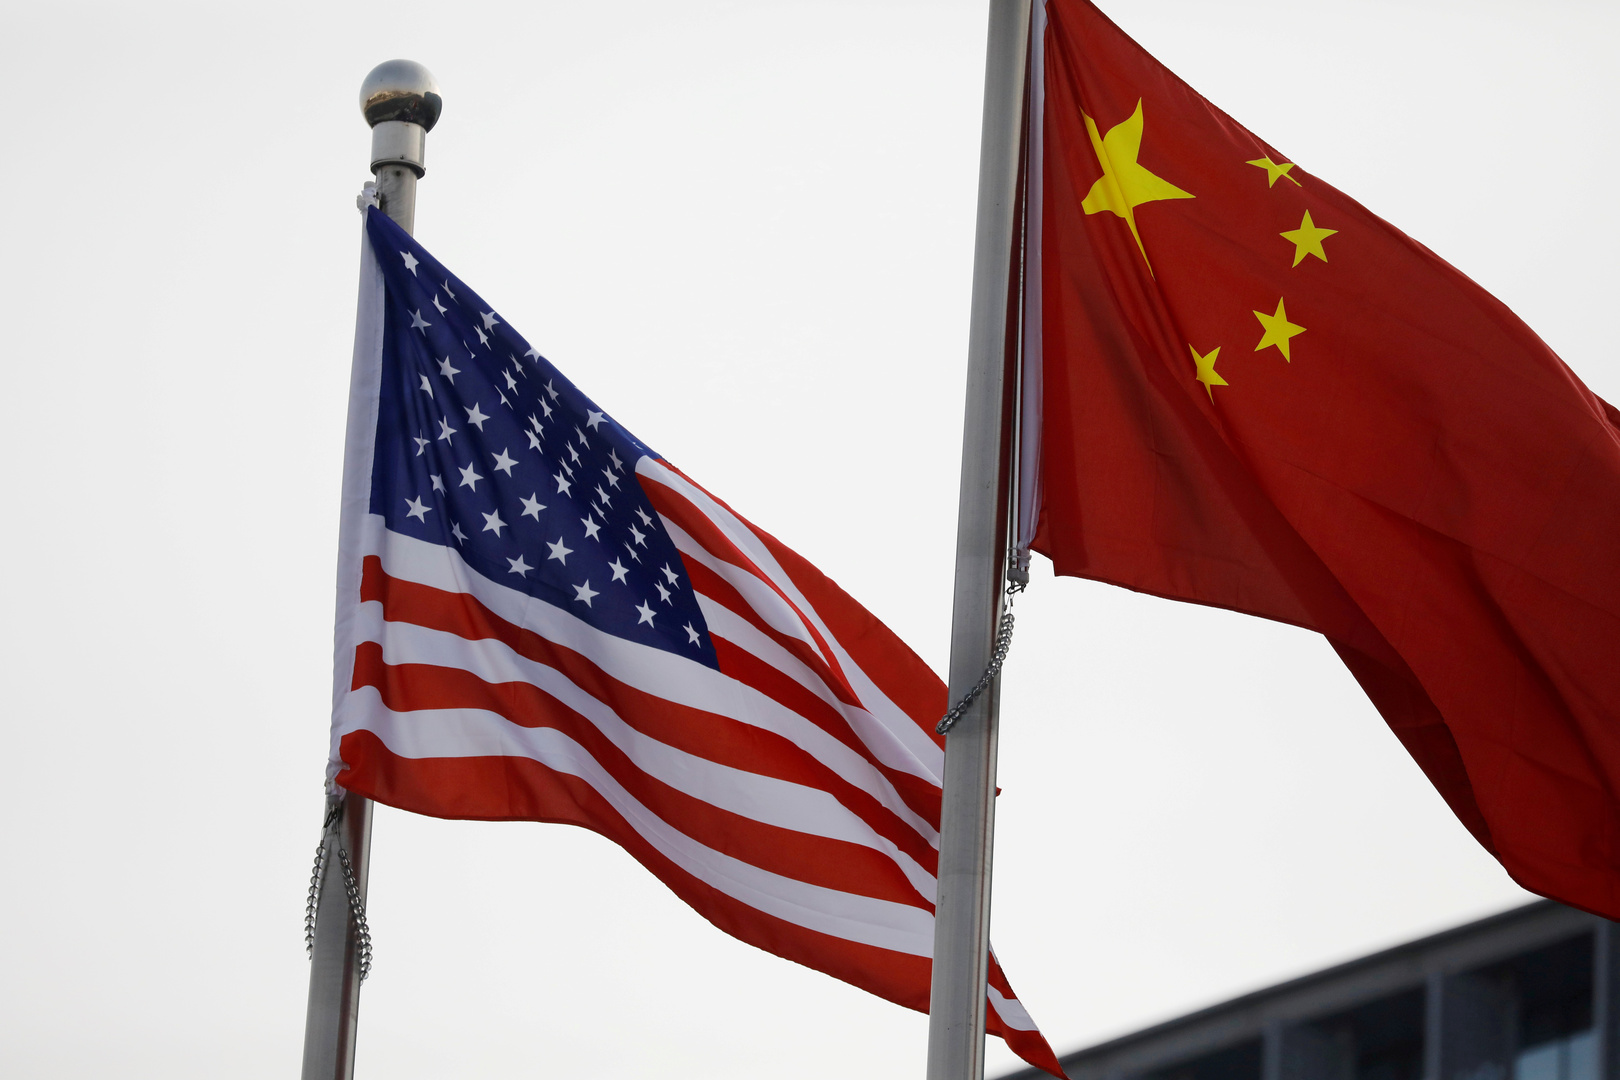 الصين تحتج بشدة على العقوبات الأمريكية وتهدد بإجراءات جوابية